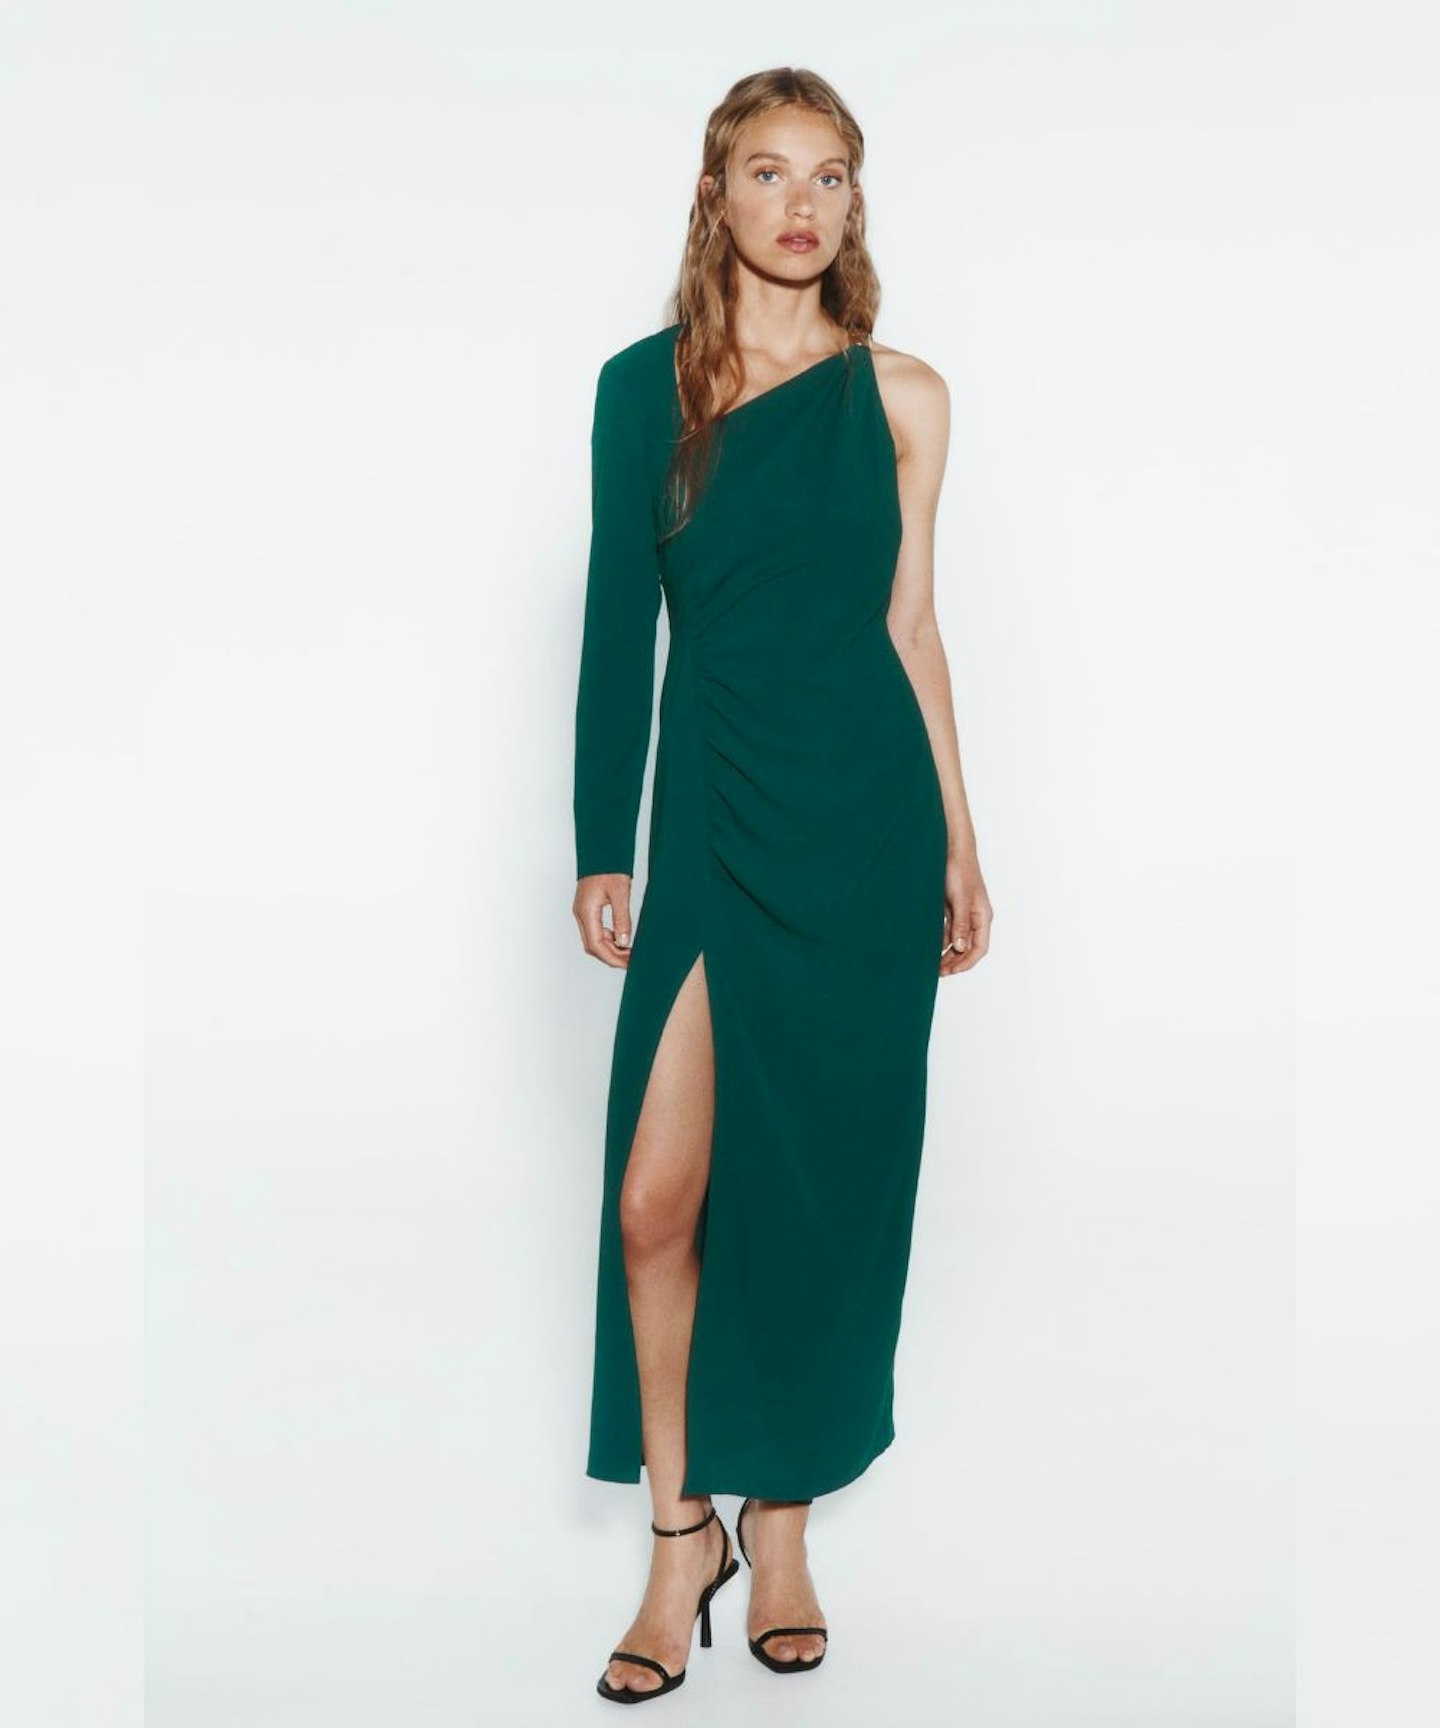 Zara Asymmetric Dress With Metal Piece